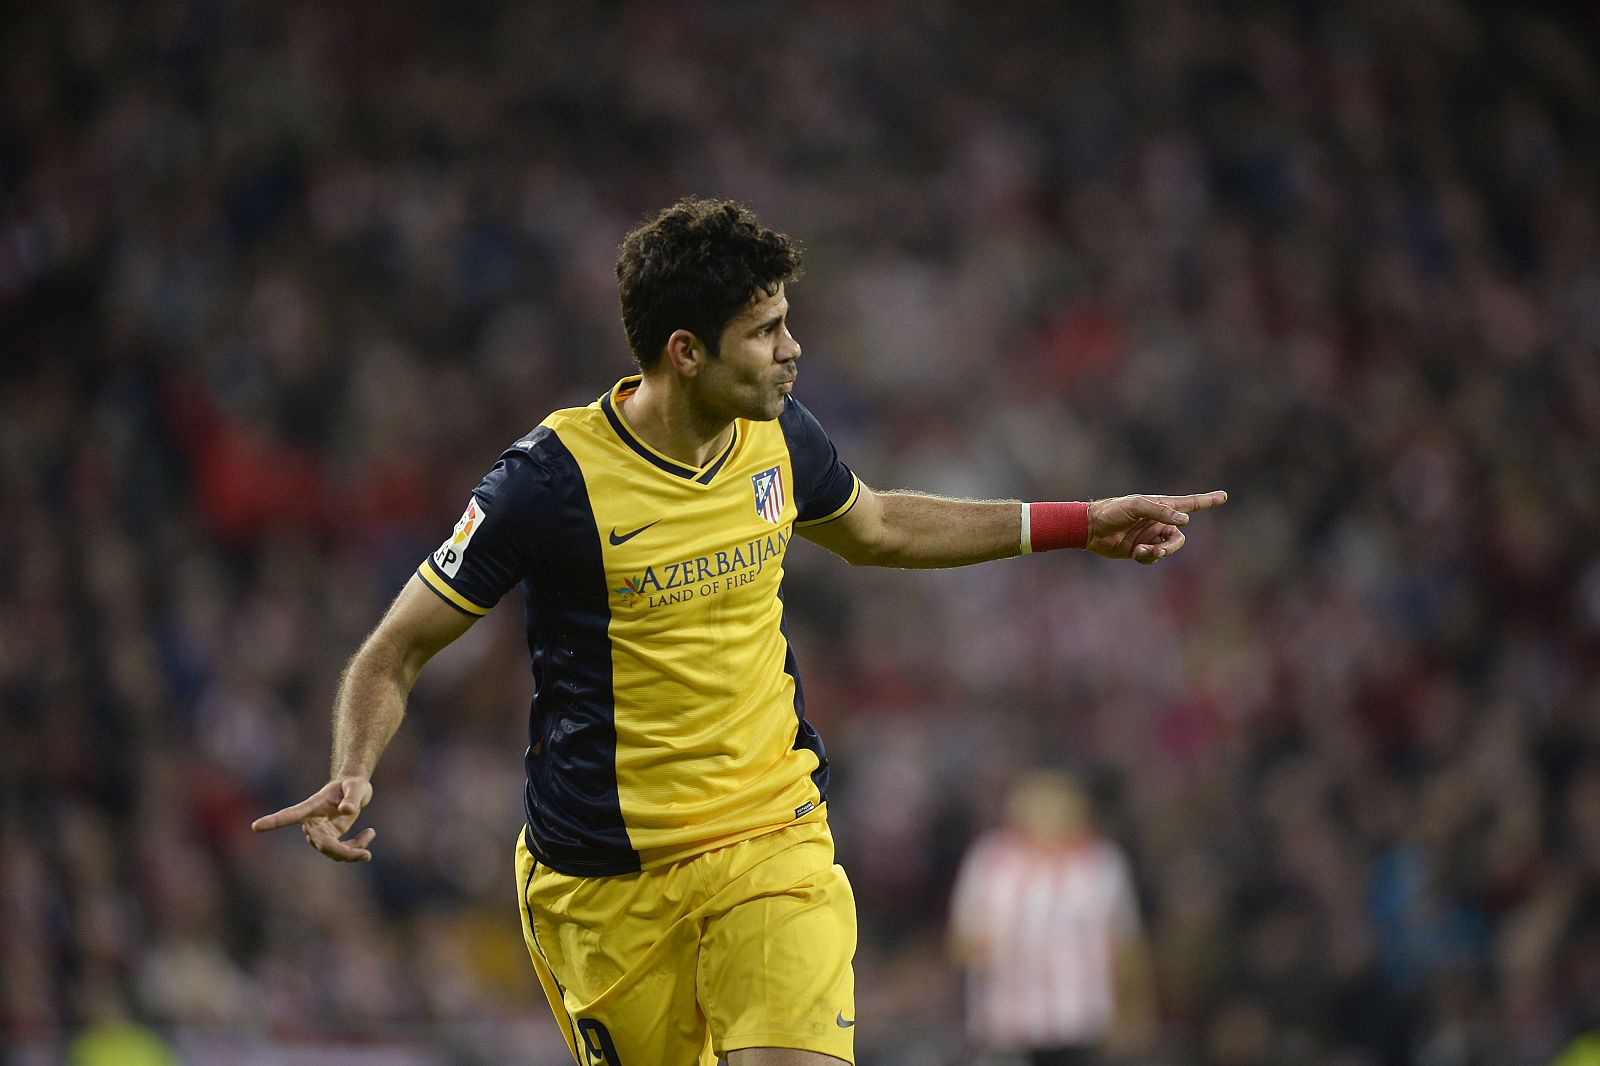 Costa celebra el gol anotado ante el Athletic, que ha valido el 1-1 en la primera mitad.